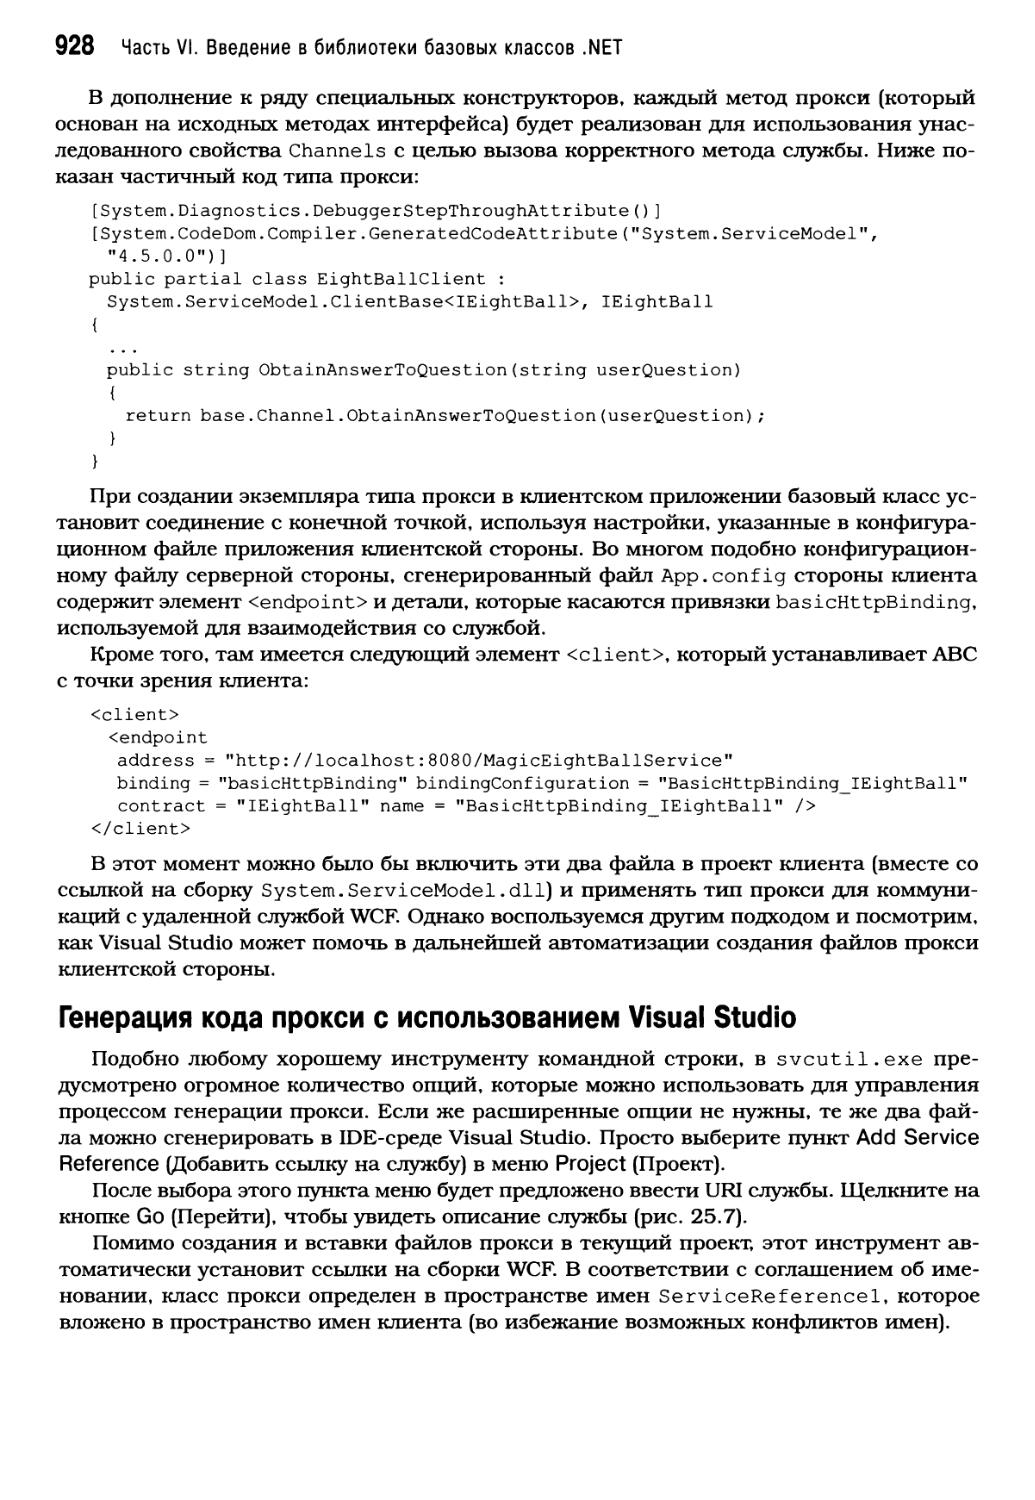 Генерация кода прокси с использованием Visual Studio